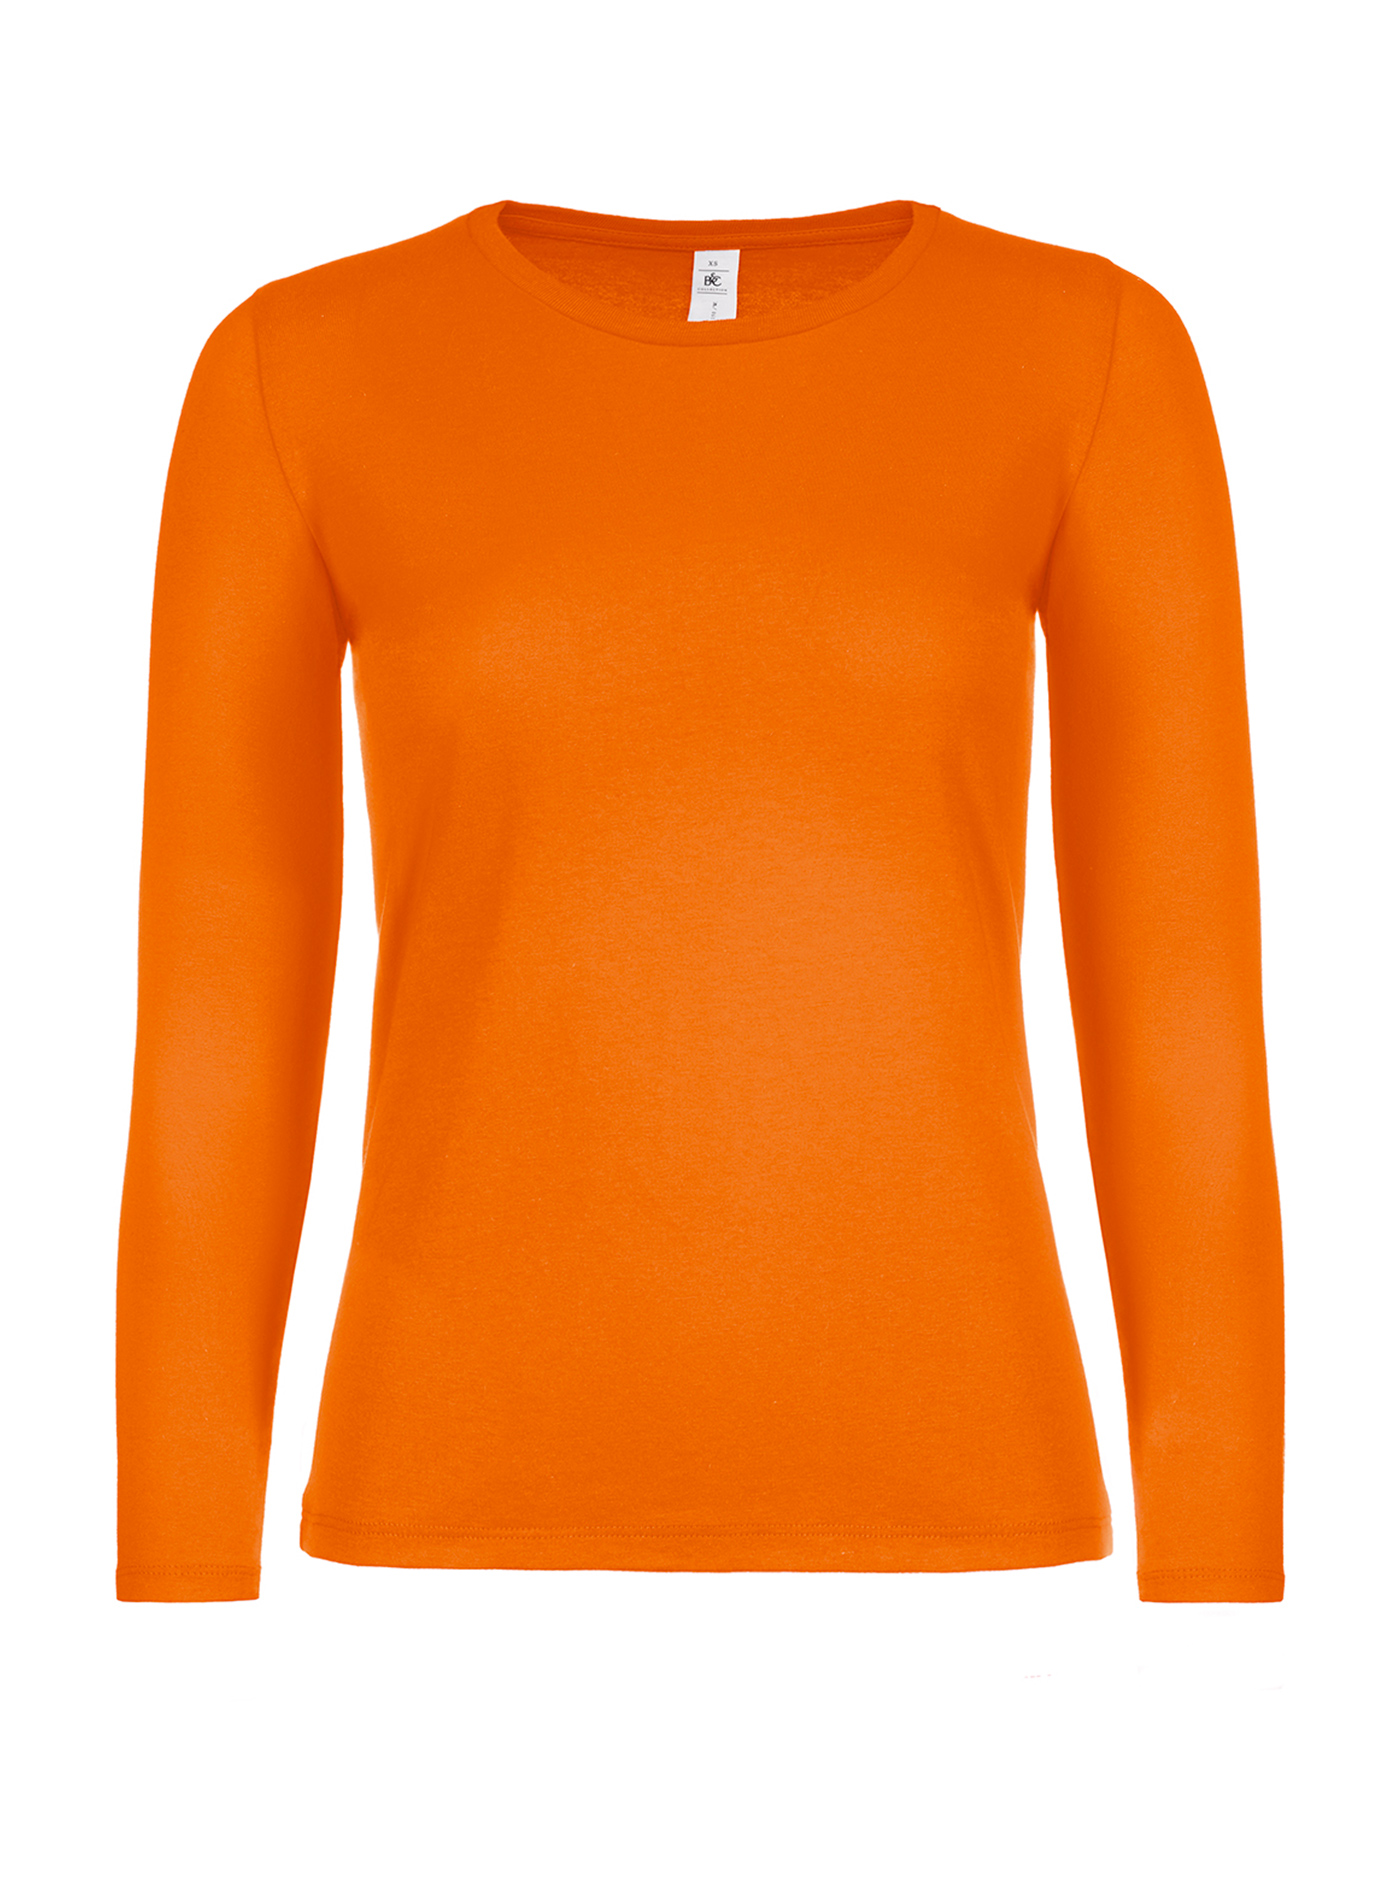 Dámské tričko s dlouhým rukávem B&C - Oranžová XL